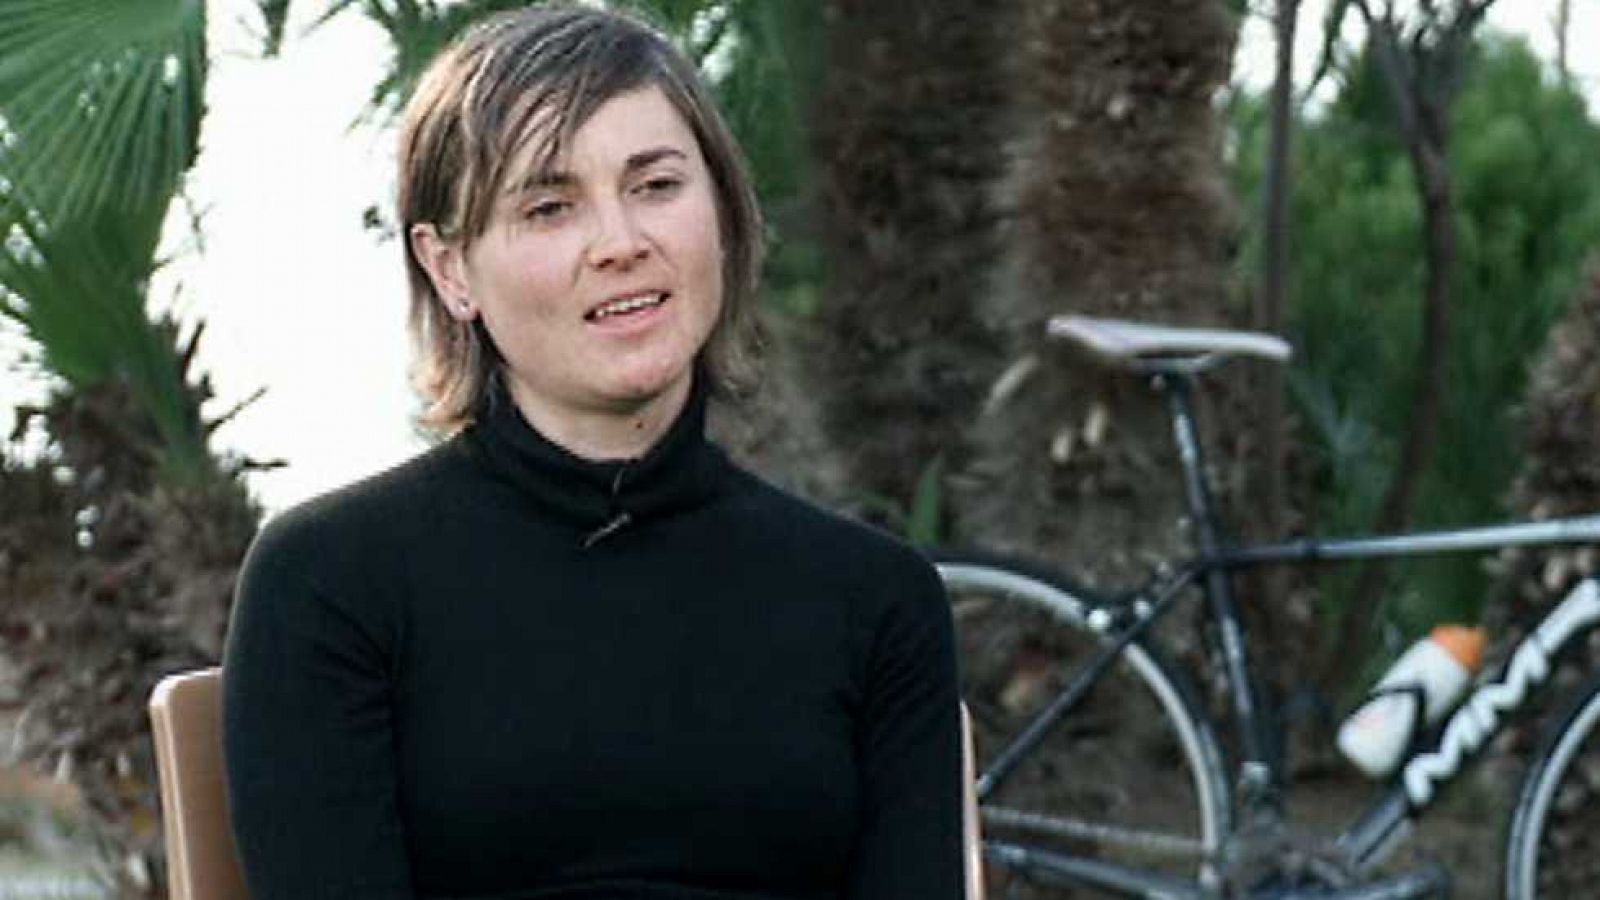 Mujer y deporte - Ciclismo - Belén López